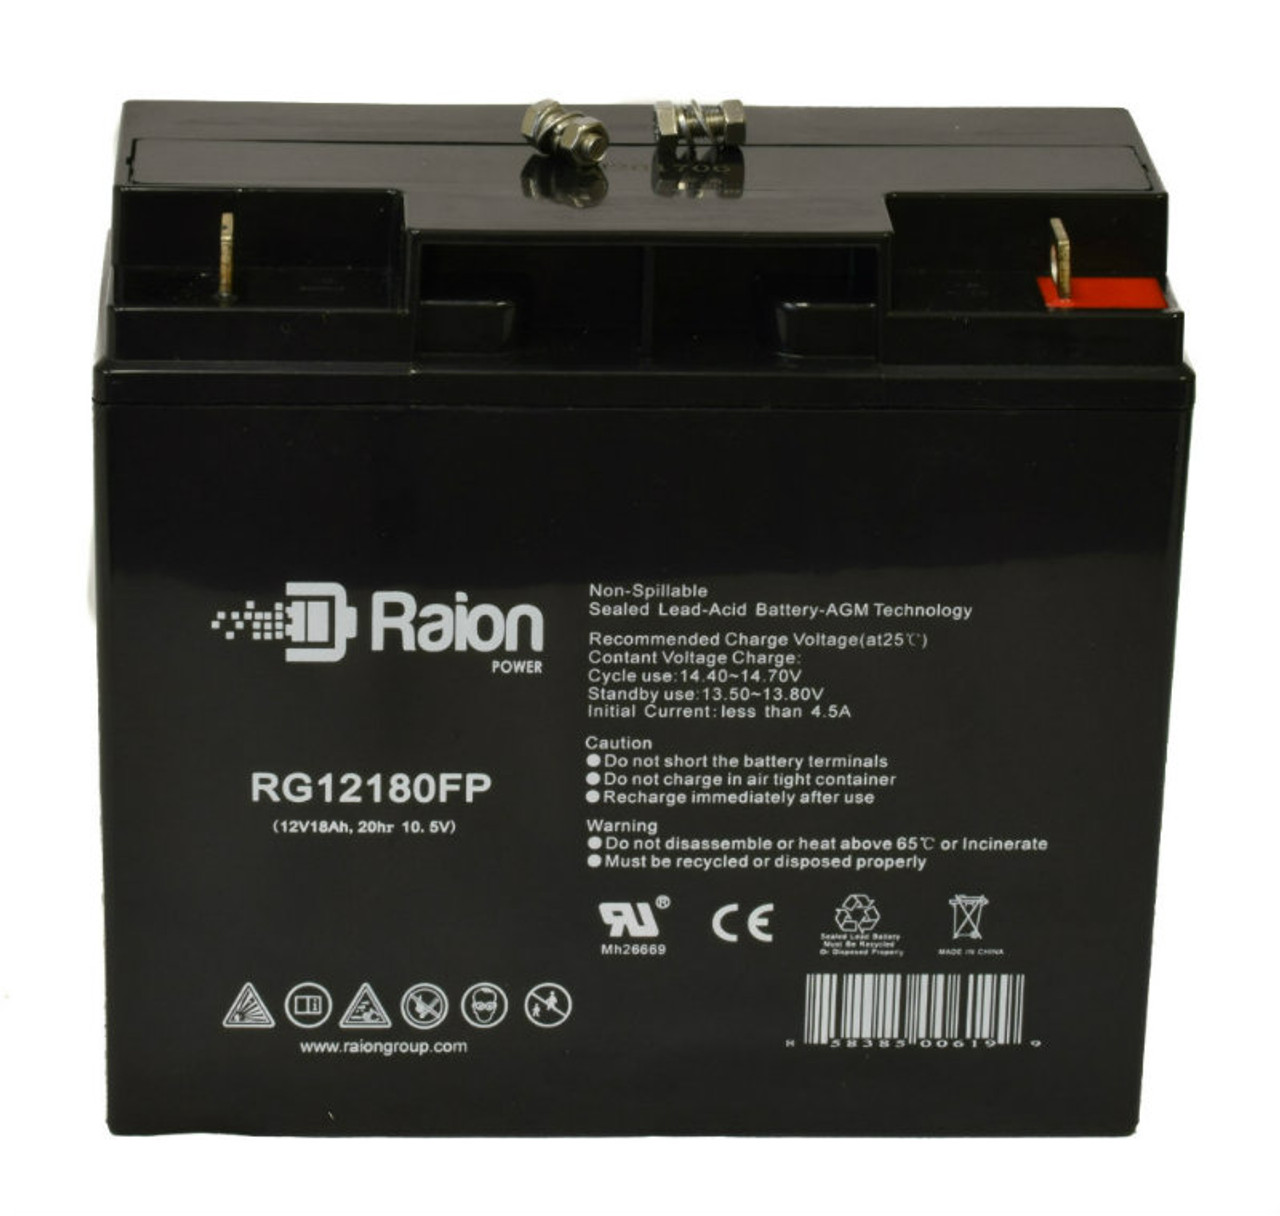 Raion Power RG12180FP 12V 18Ah Lead Acid Battery for Golden Technologies LiteRider 3 Wheel GL111